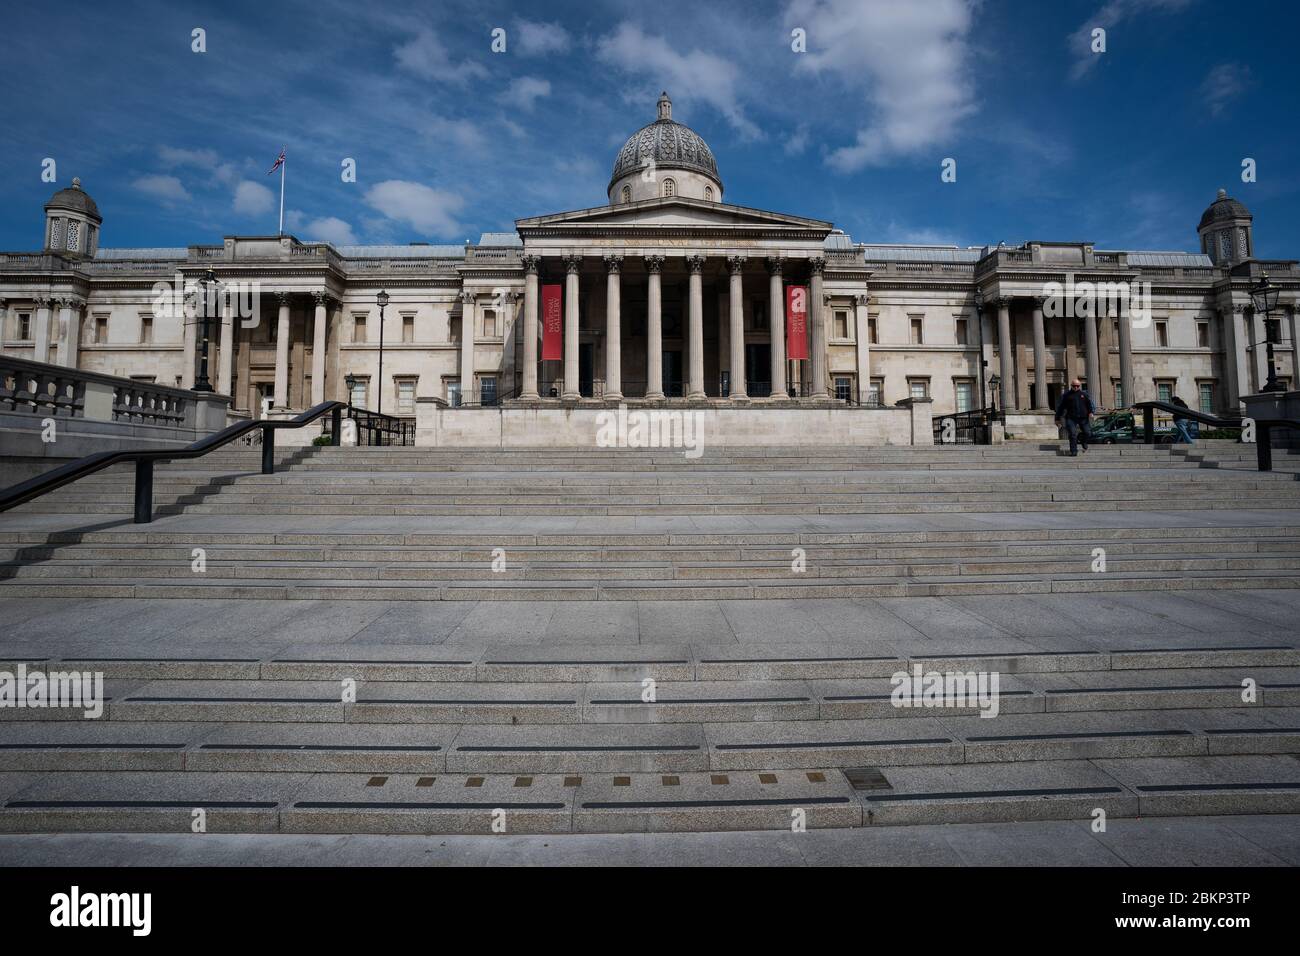 Marcadores de medición imperiales incorporados en los escalones que conducen a la Galería Nacional de Retratos en Trafalgar Square en Londres, mientras el Reino Unido continúa en el cierre para ayudar a frenar la propagación del coronavirus. Foto de stock